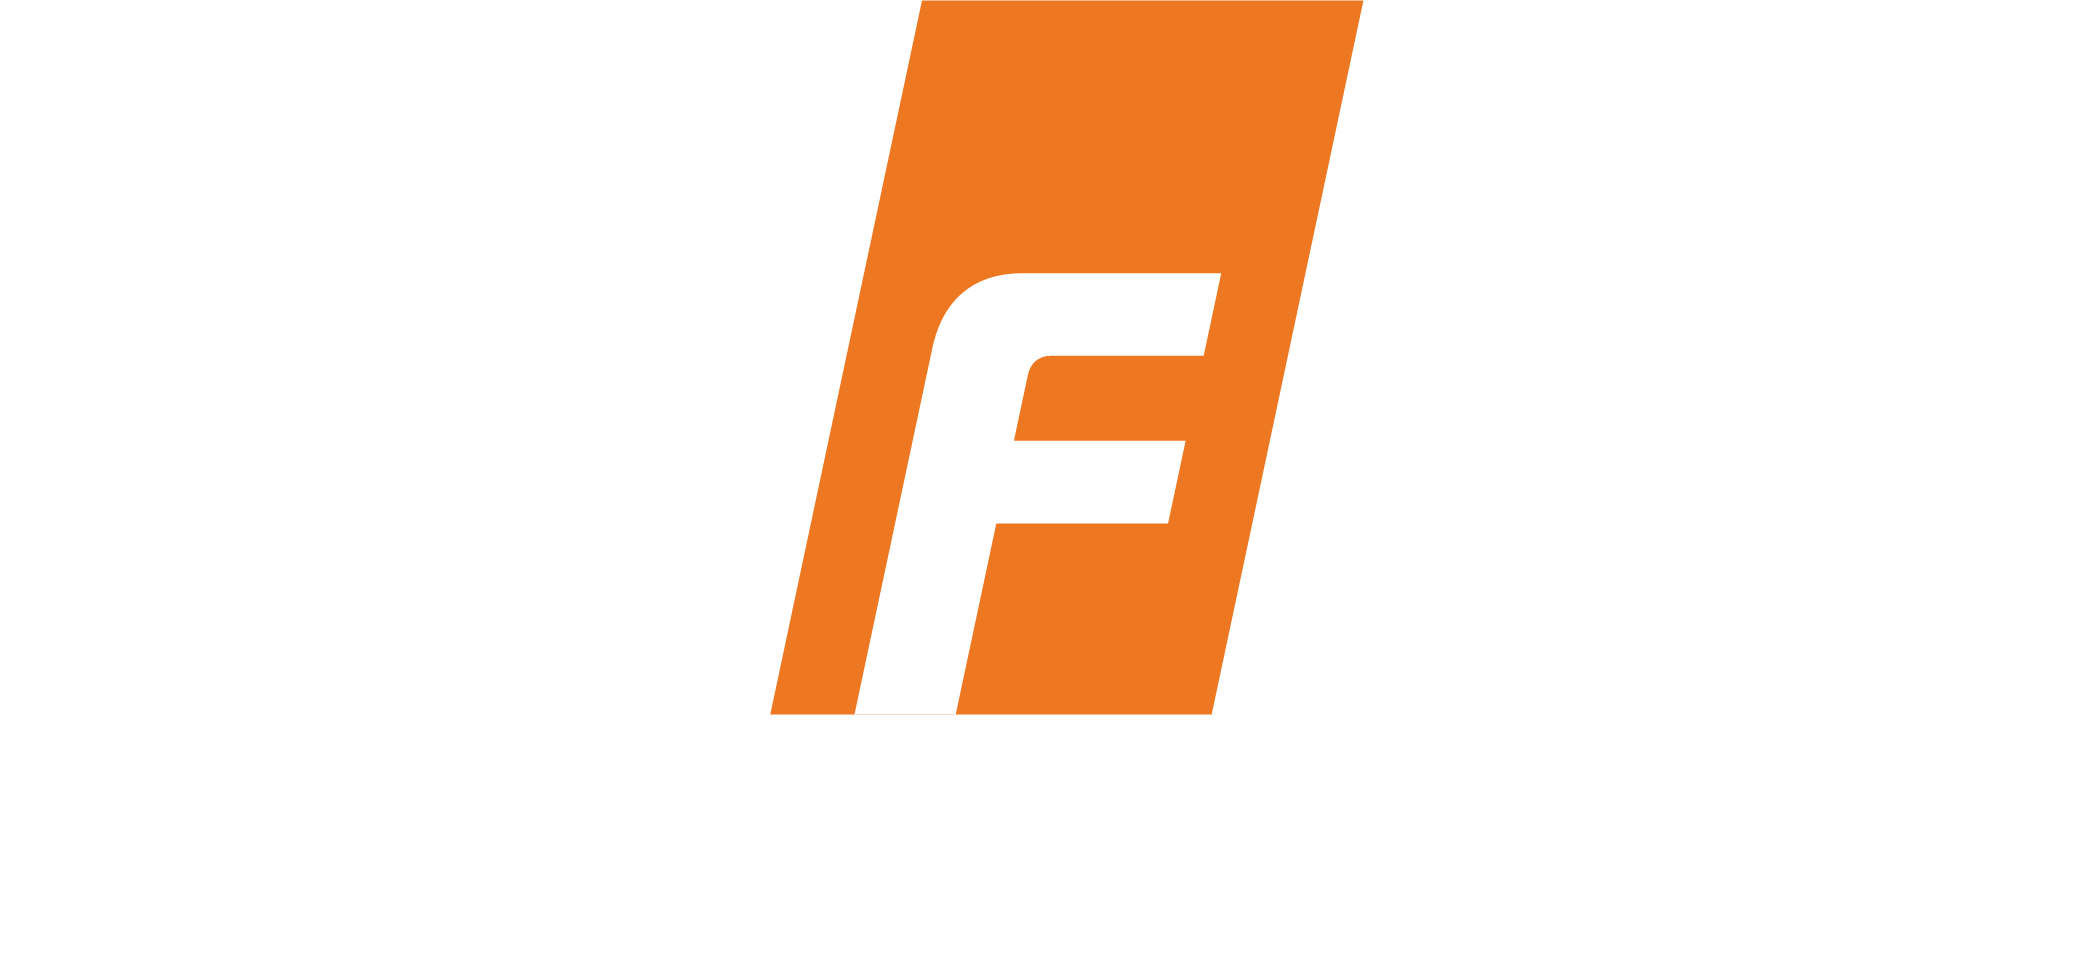 Nifco logo with slogan